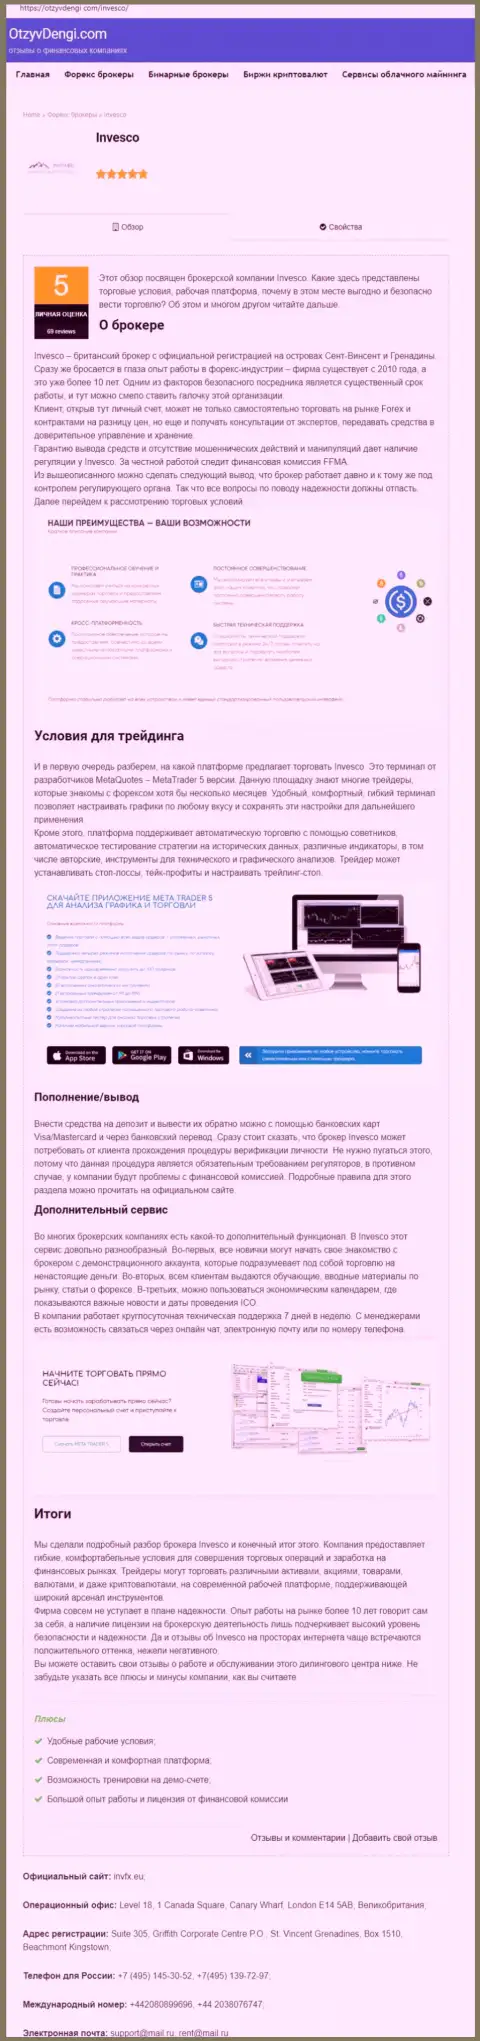 Онлайн-сервис OtzyvDengi Com предоставил публикацию об Forex компании INVFX